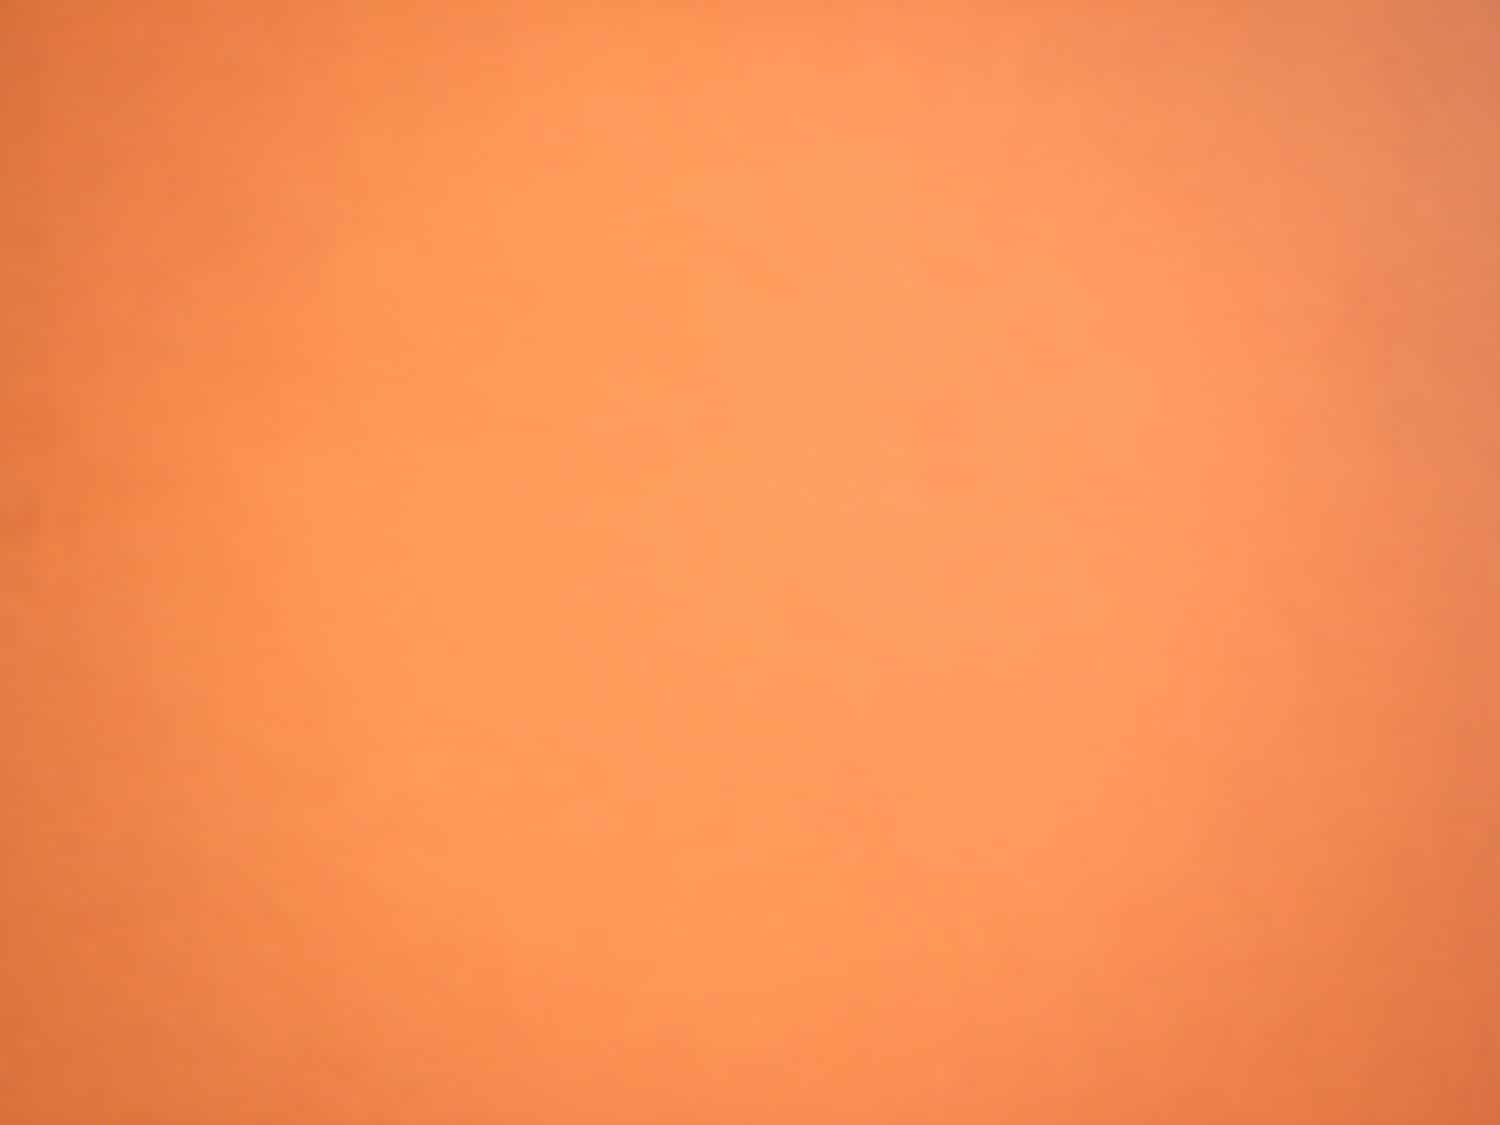 Sfocatura dello sfondo di colore arancione Atomic Tangerine